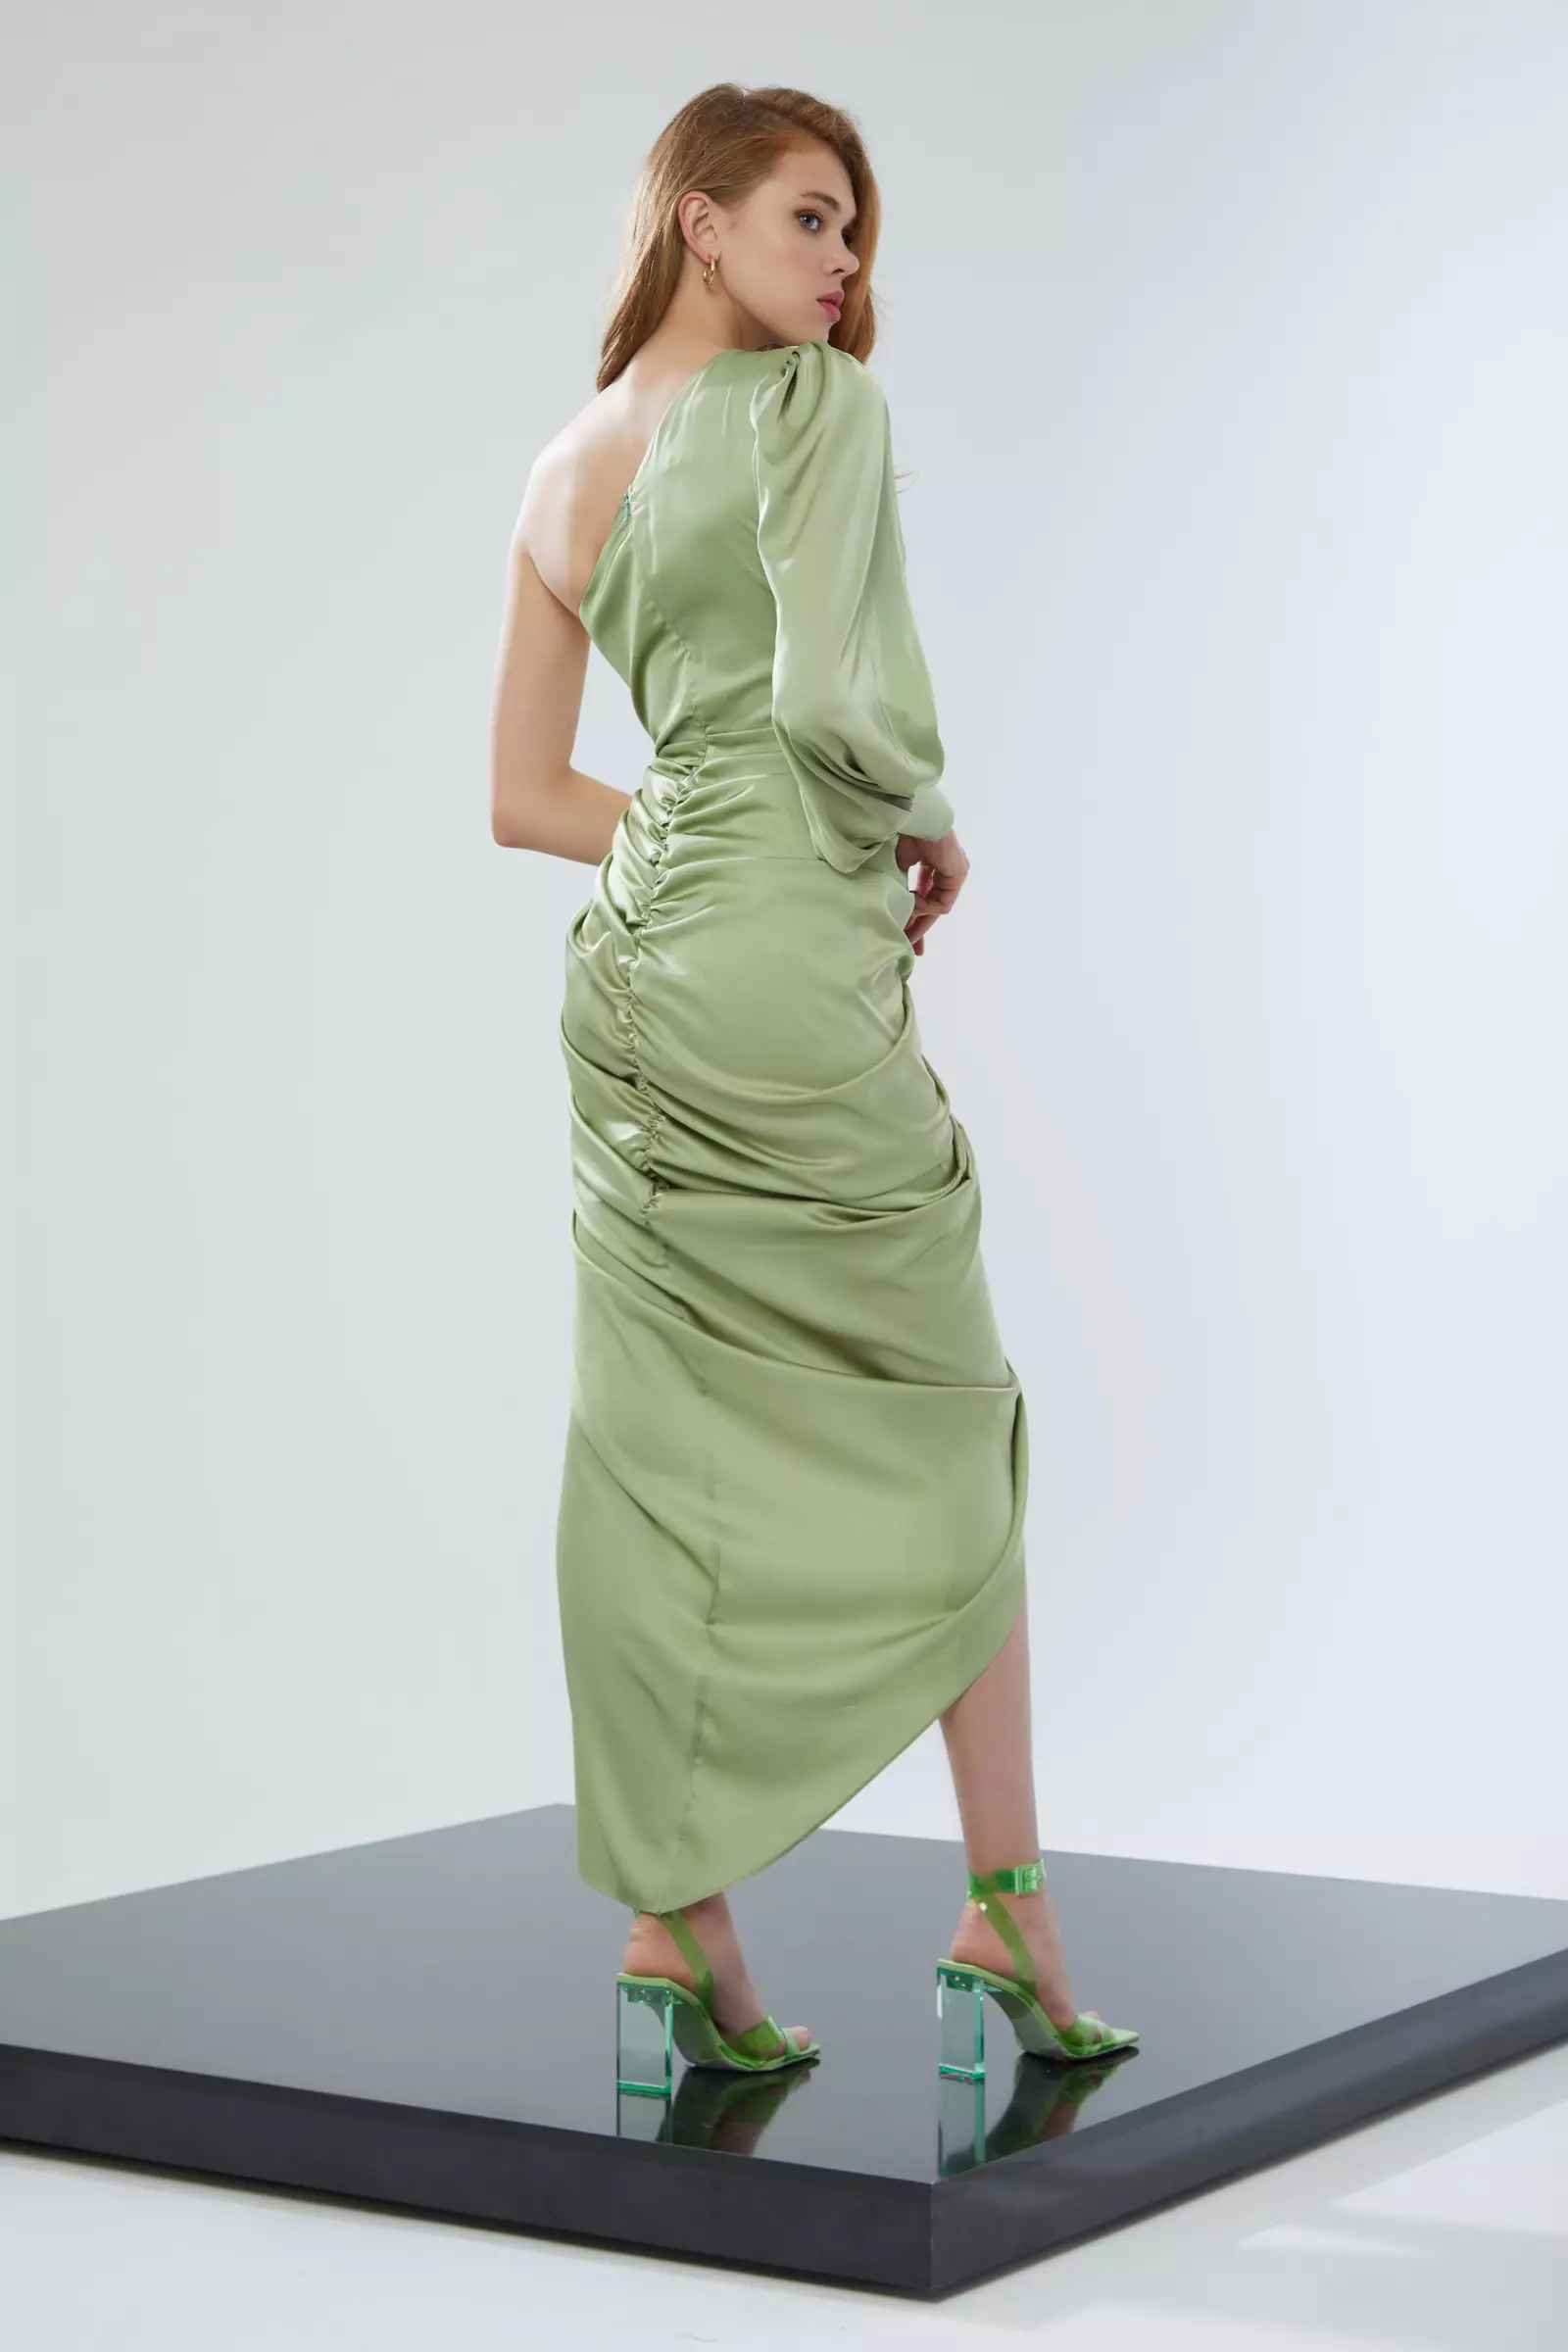 Mint Green Satin One Arm Maxi Dress